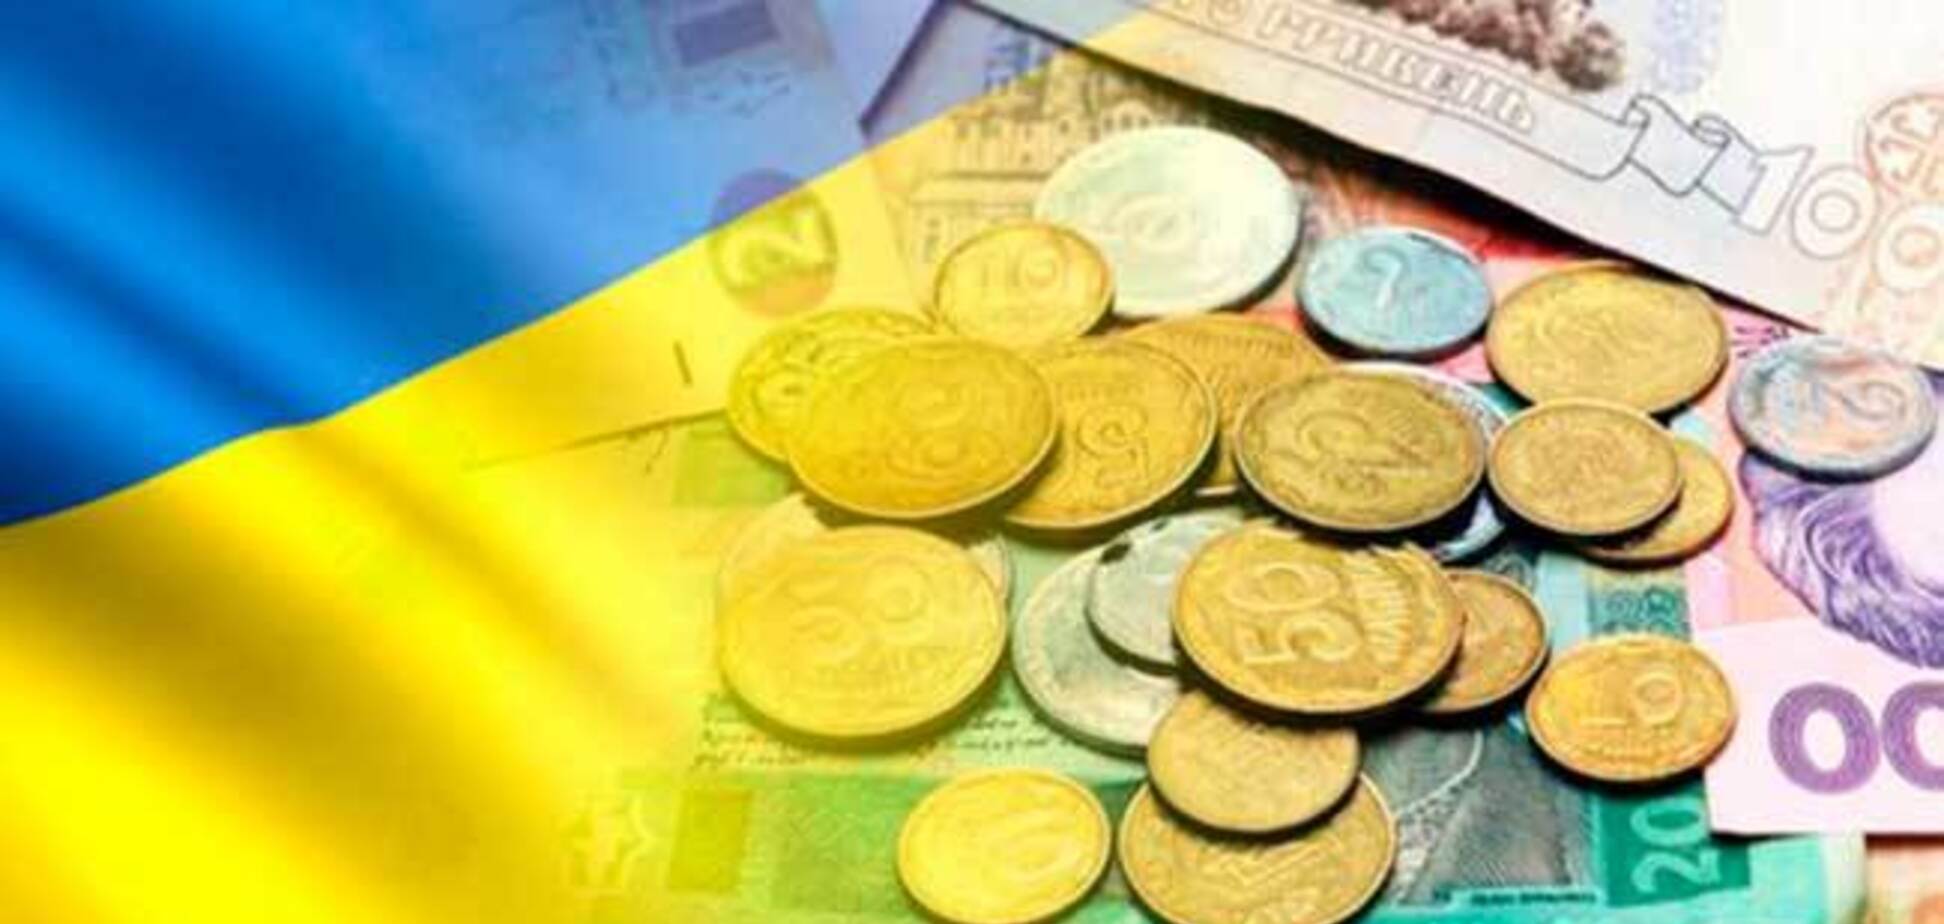 'Контрабанда як йшла, так і йде': економіст розповів про проблеми бюджету України